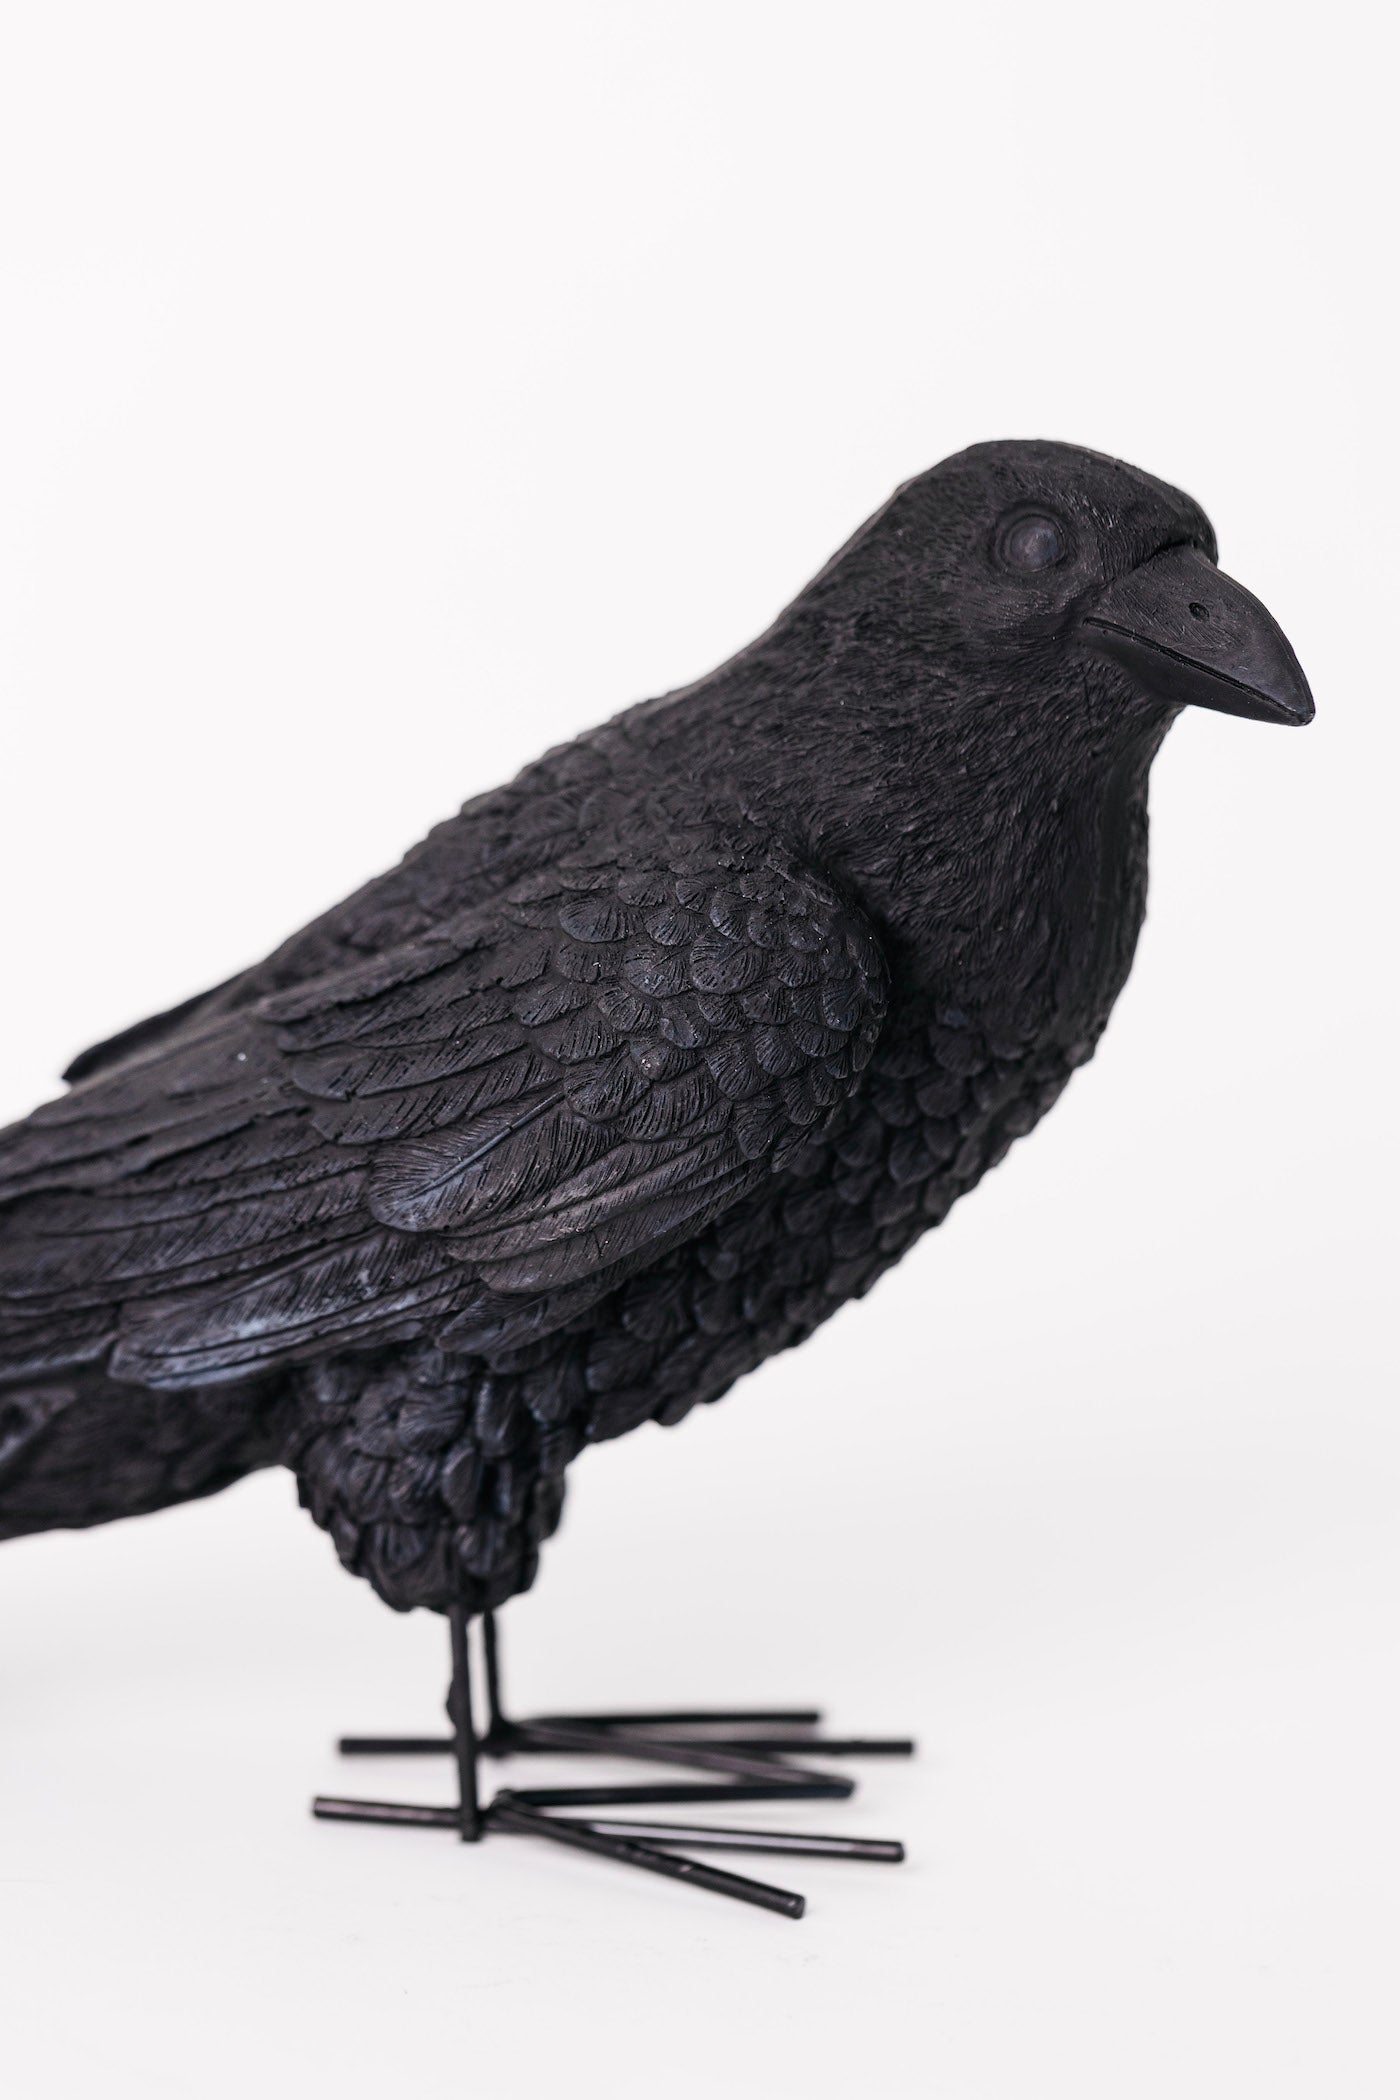 Salem Crow